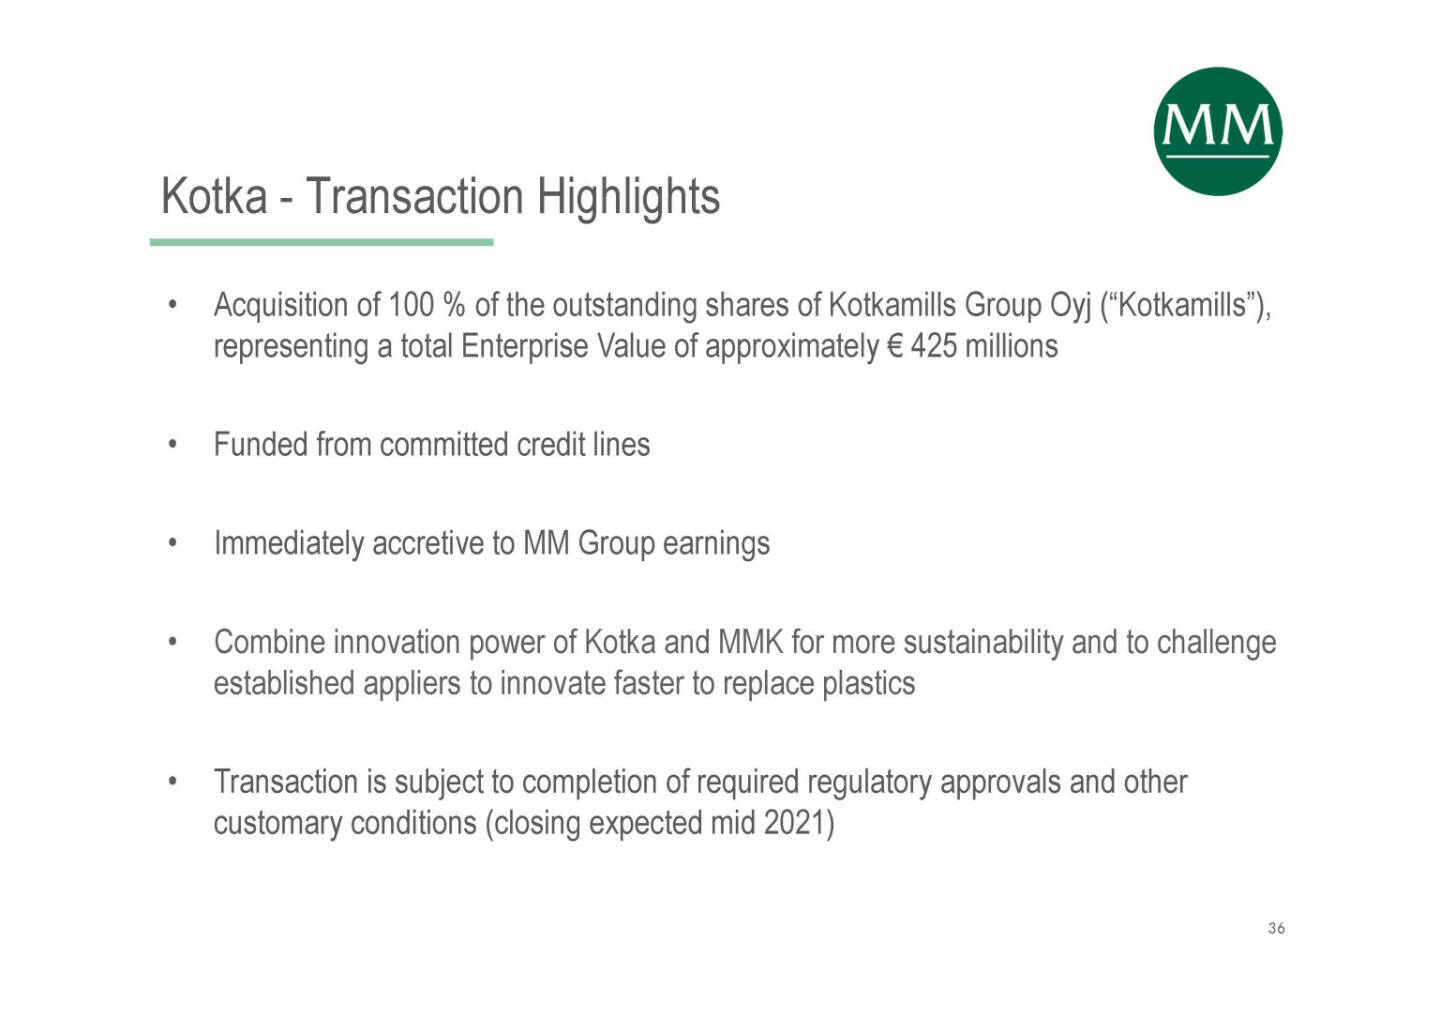 Mayr-Melnhof - Kotka - Transaction Highlights